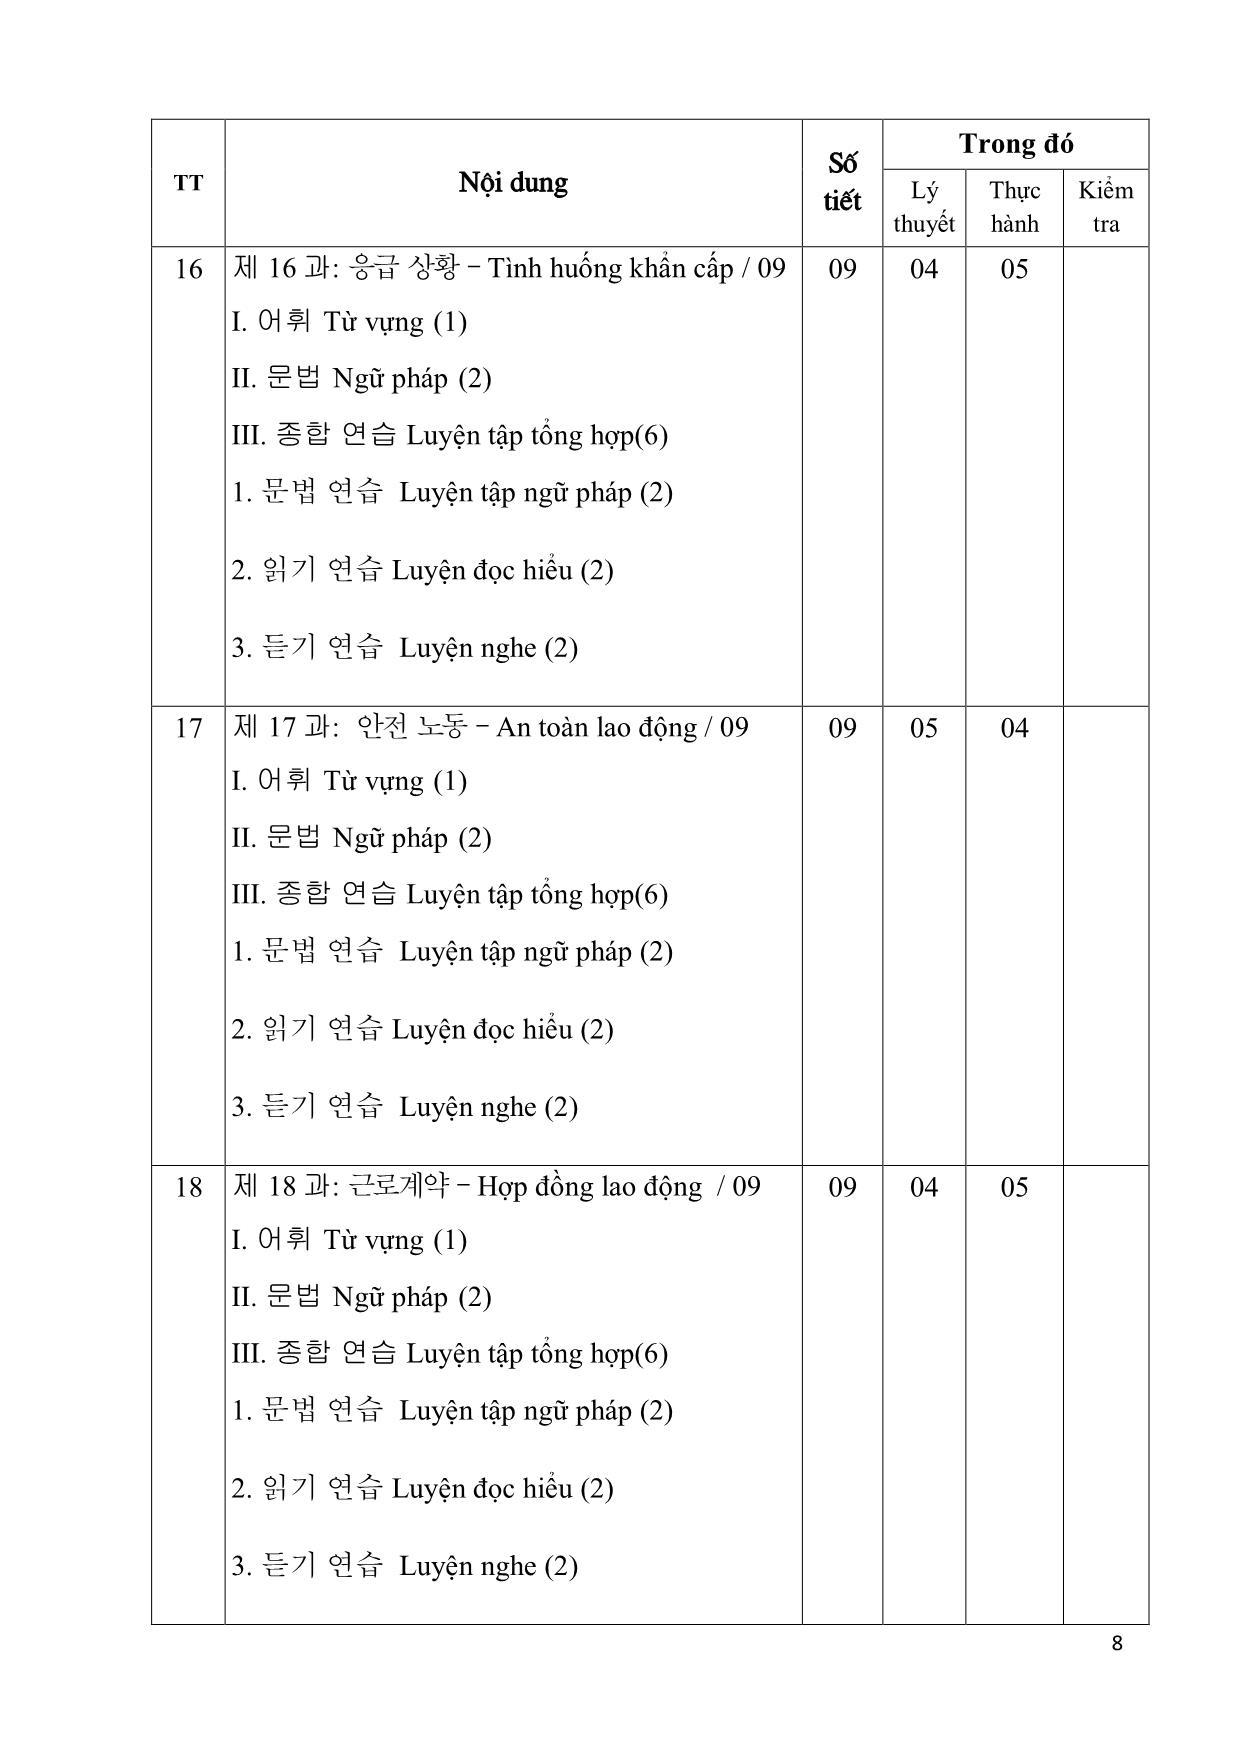 Giáo trình Chương trình tiếng Hàn dùng trong sản xuất chế tạo trang 8